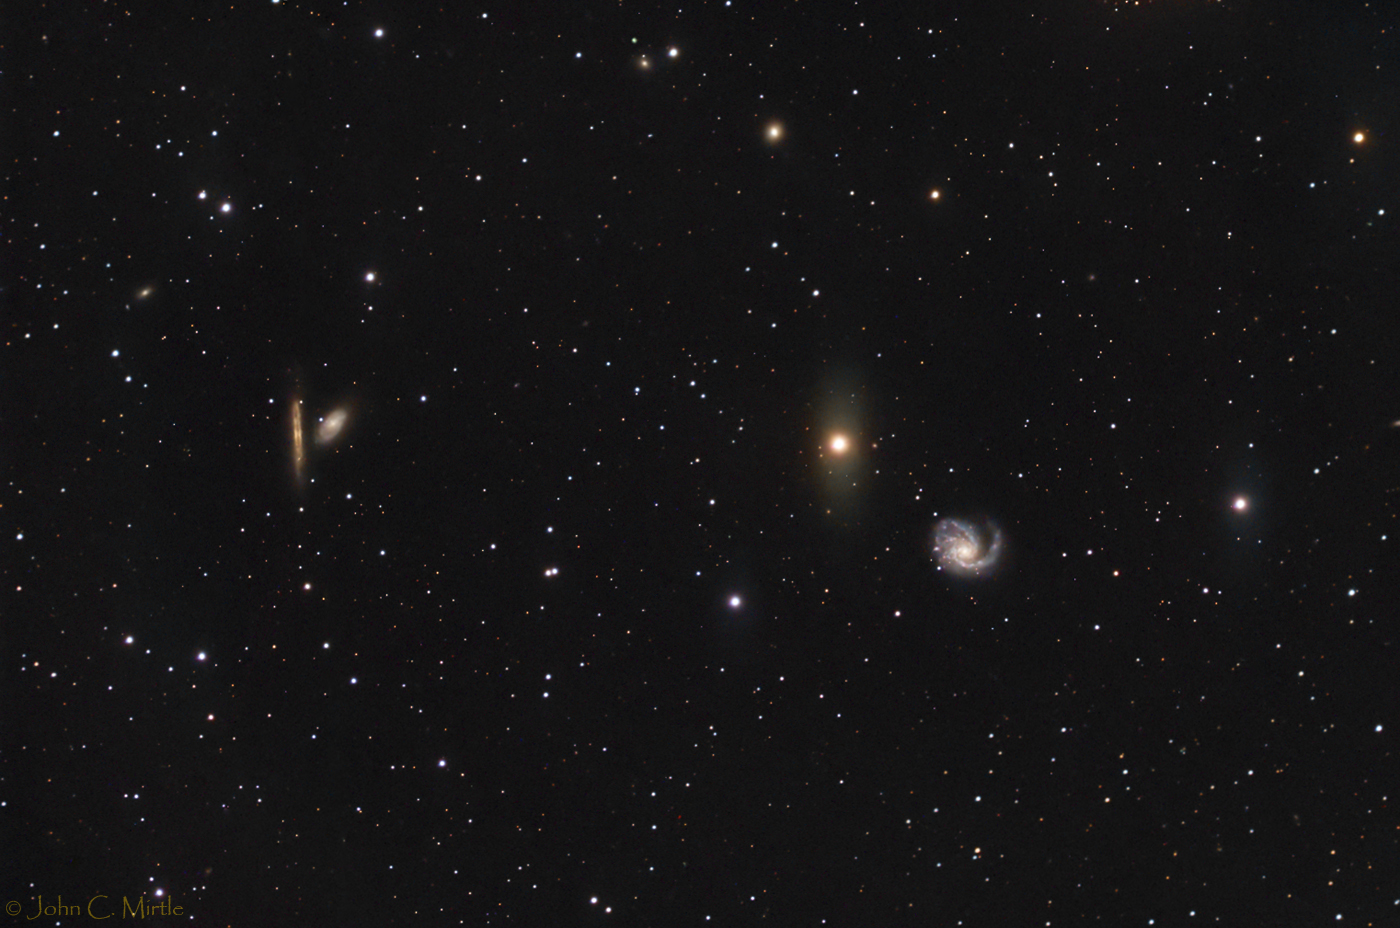 Galaxy Messier 99